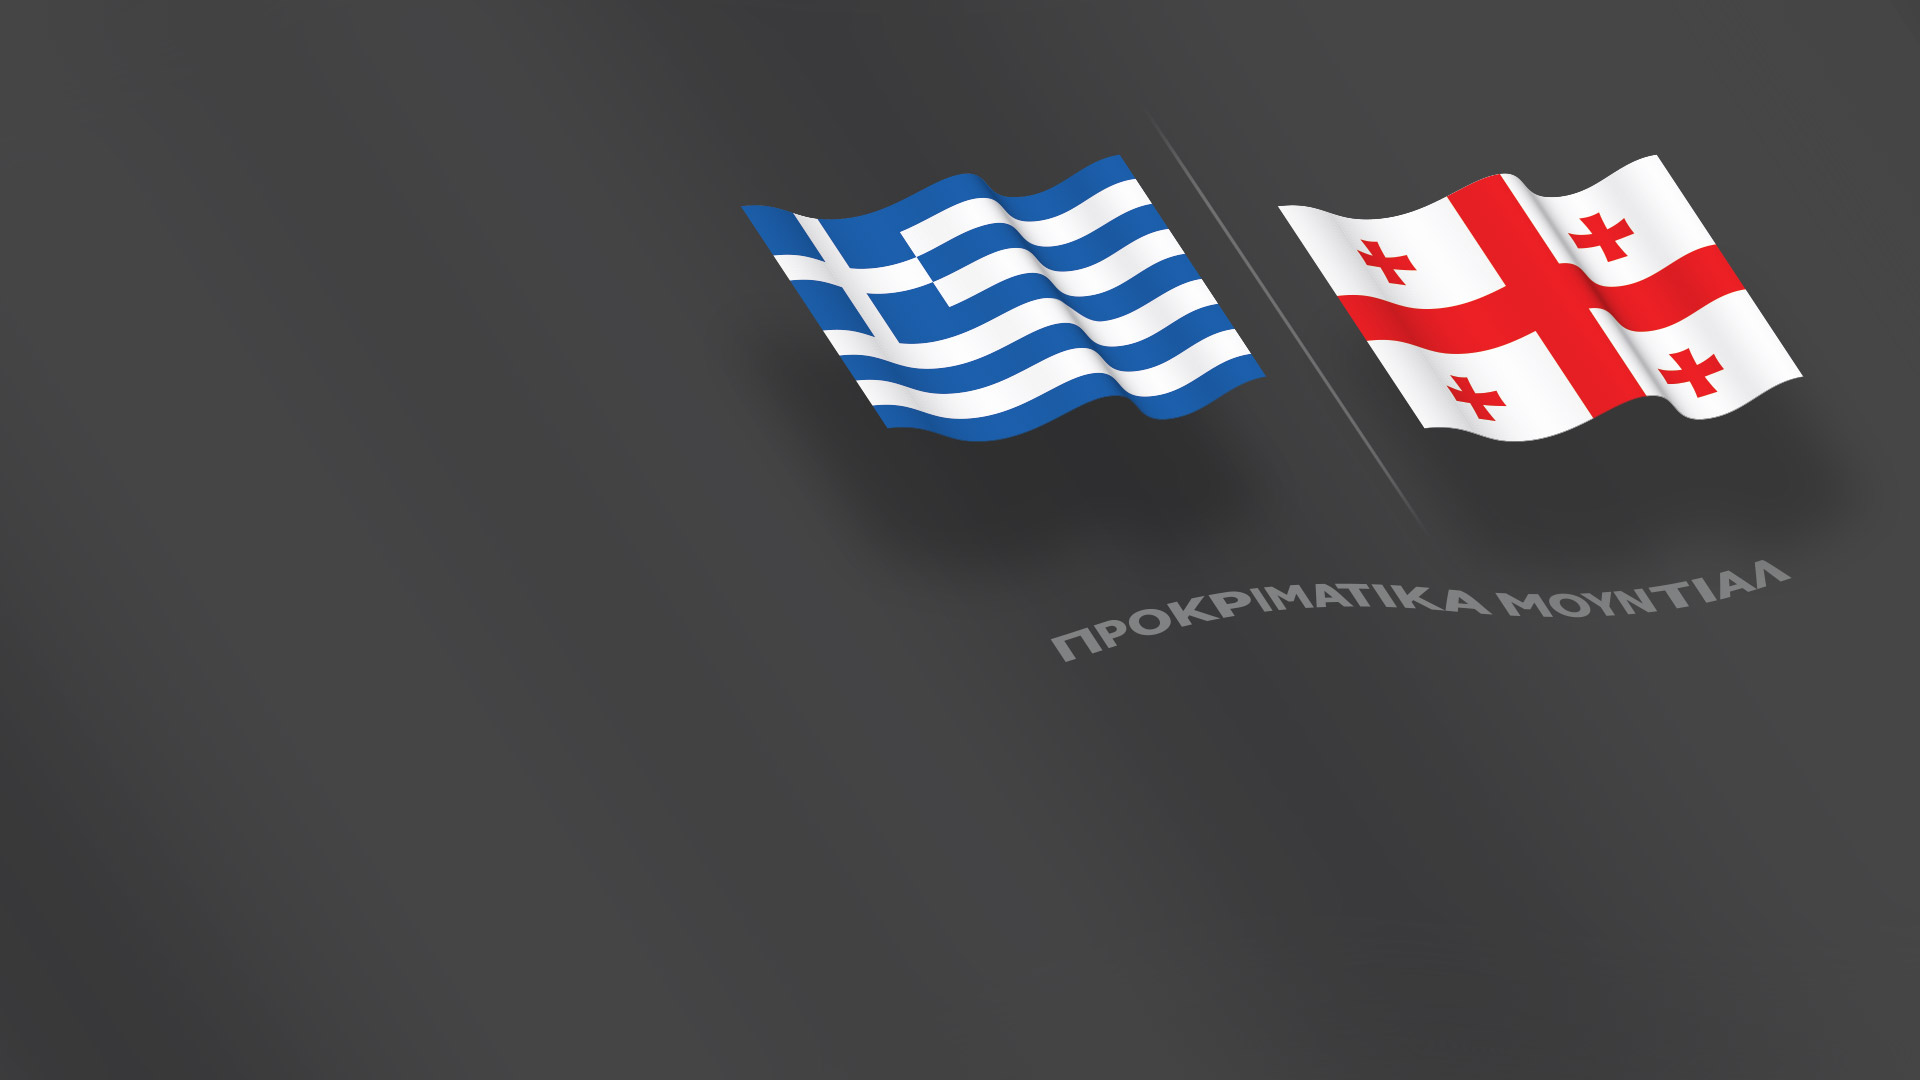 Προκριματικά Μουντιάλ - Ελλάδα-Γεωργία